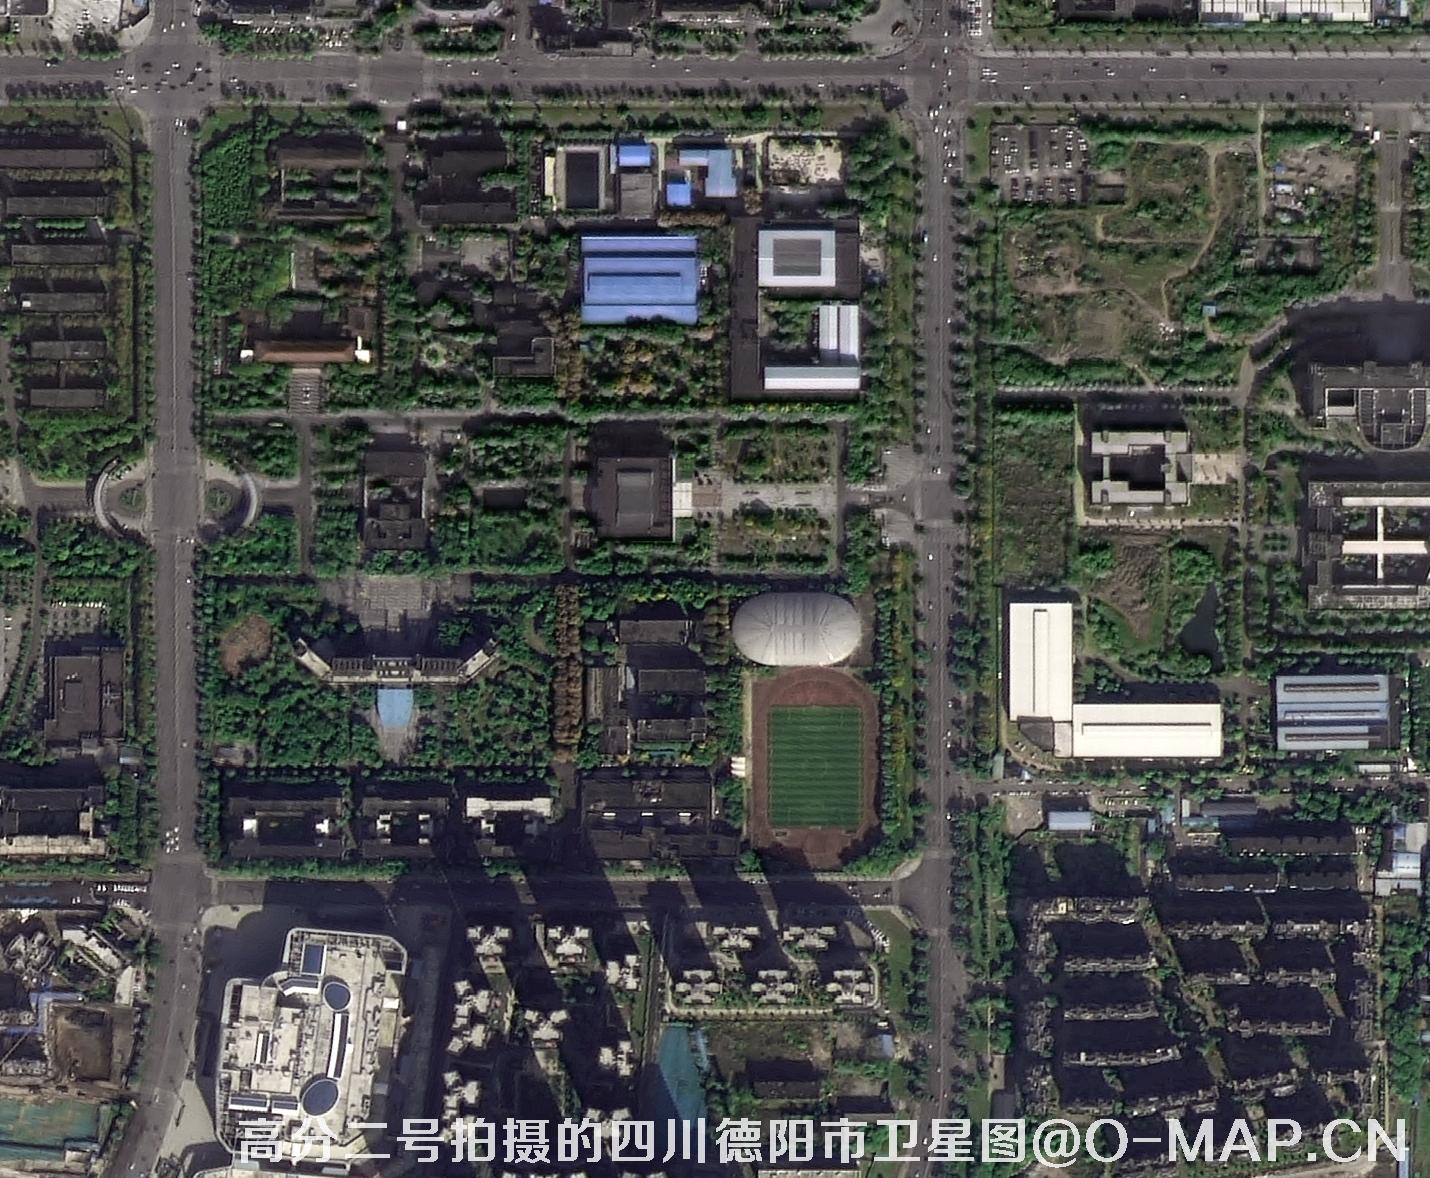 0.8米分辨率卫星拍摄的高清原图